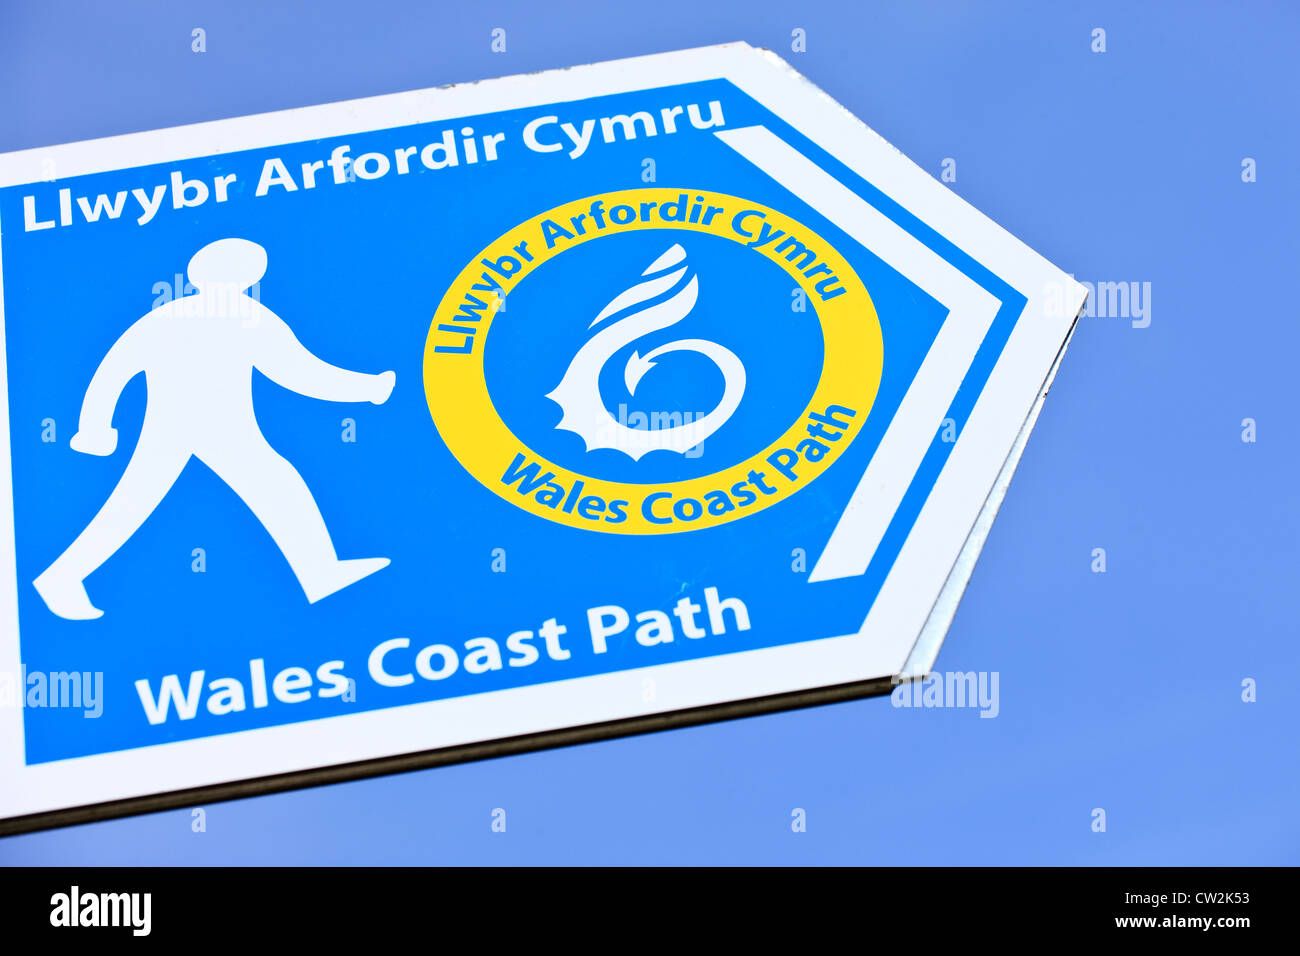 Llwybr Arfordir Cymru Wales Coast Path Sign Stock Photo